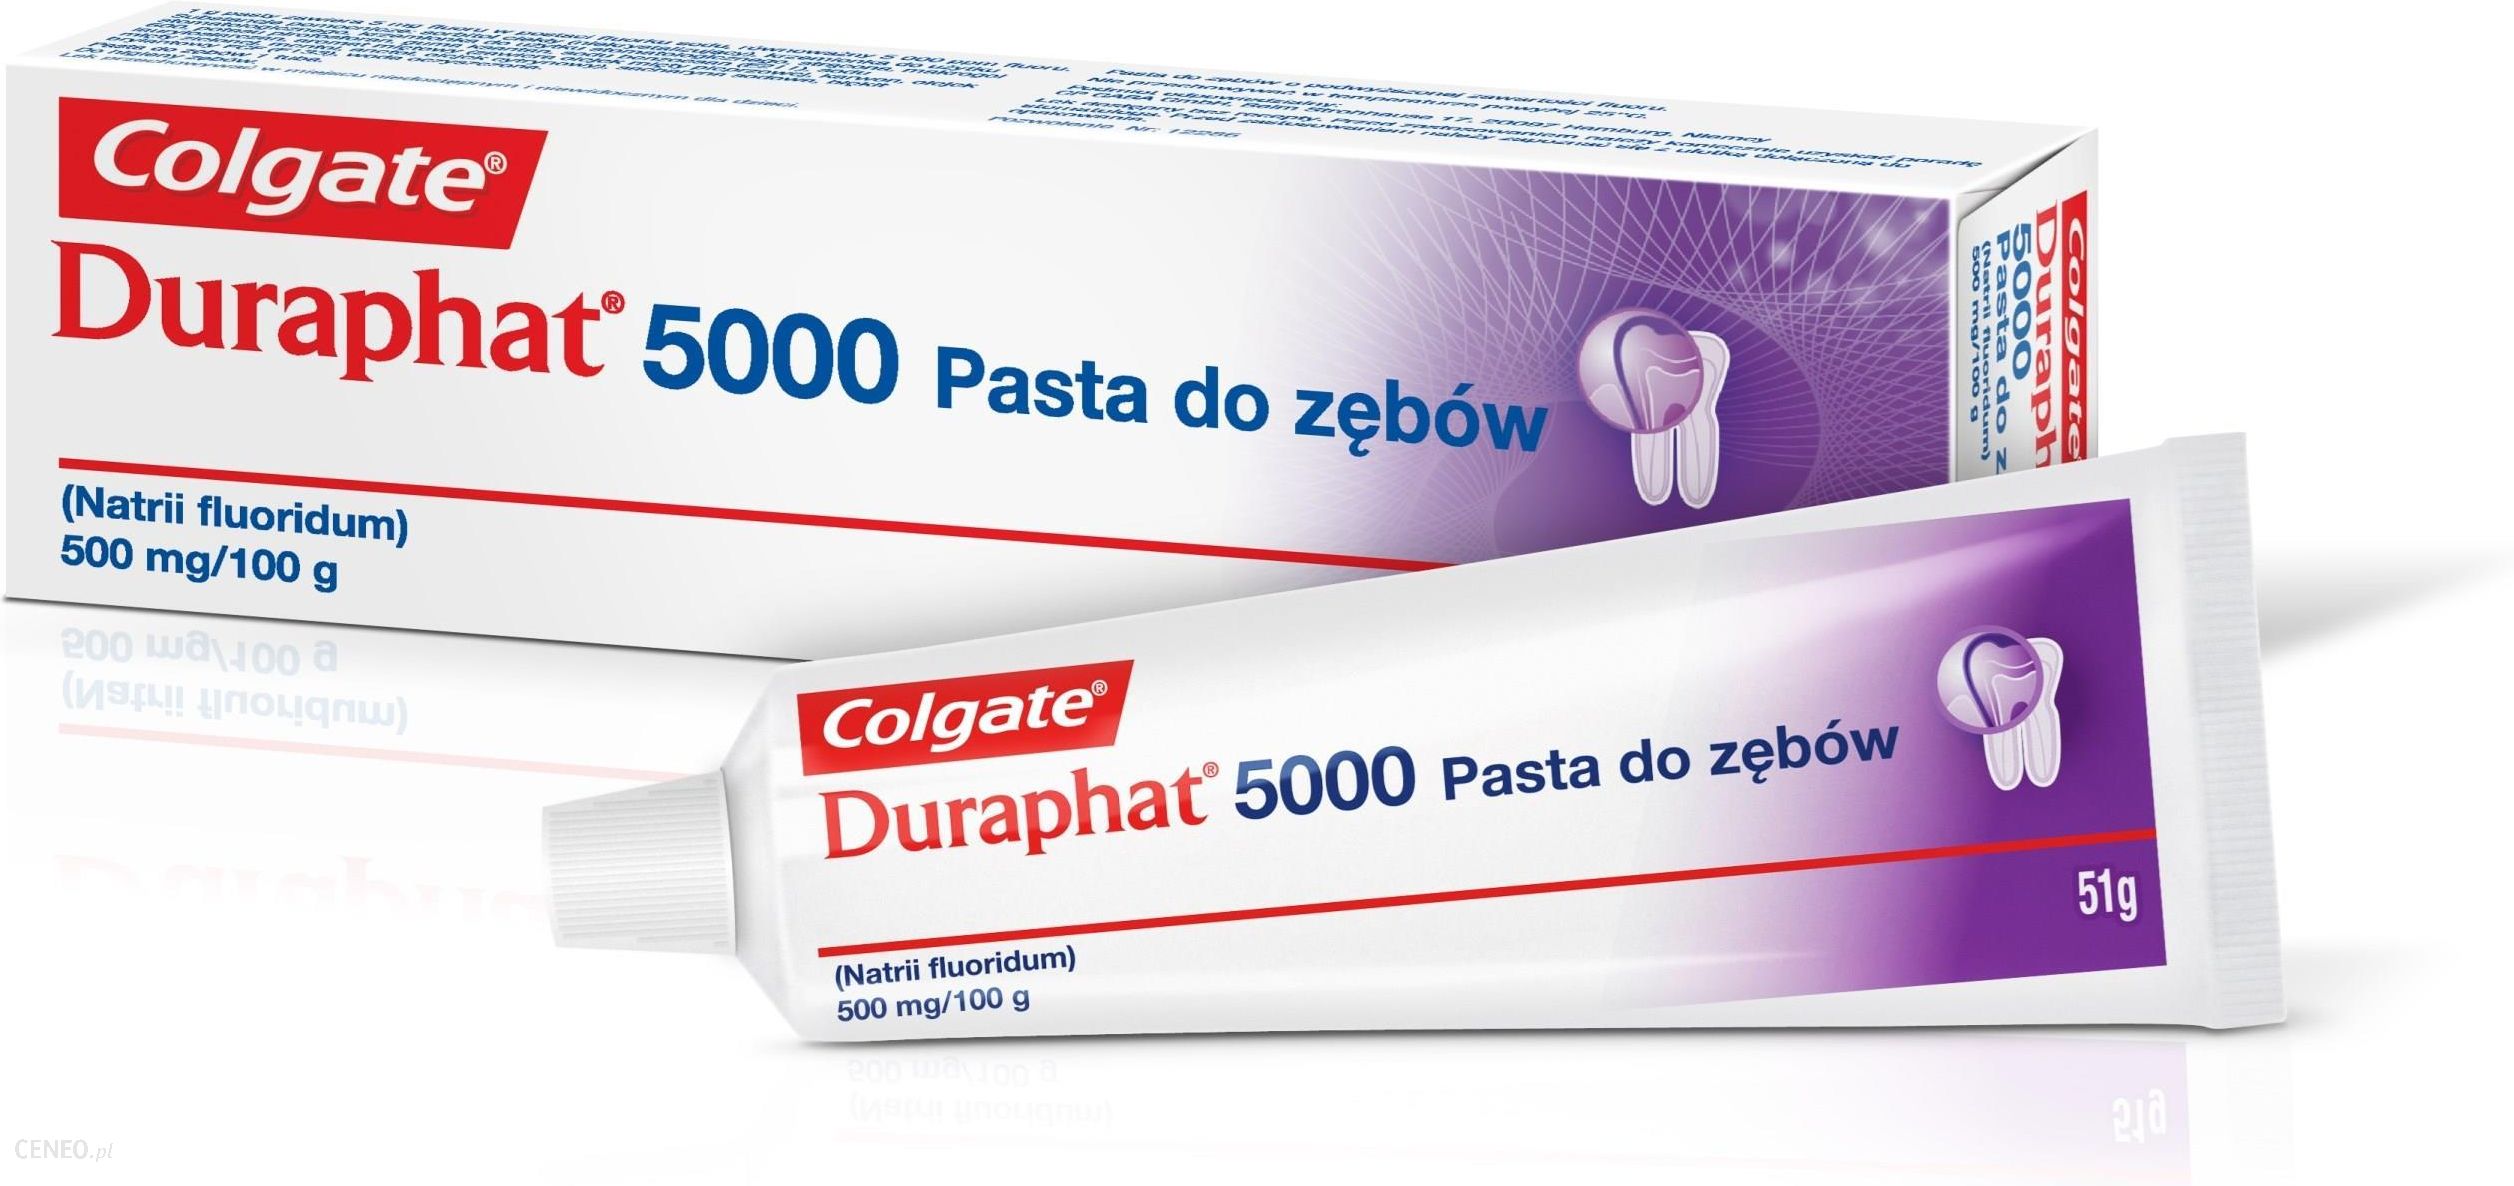  Colgate Duraphat 5000 Pasta do Zębów 51g